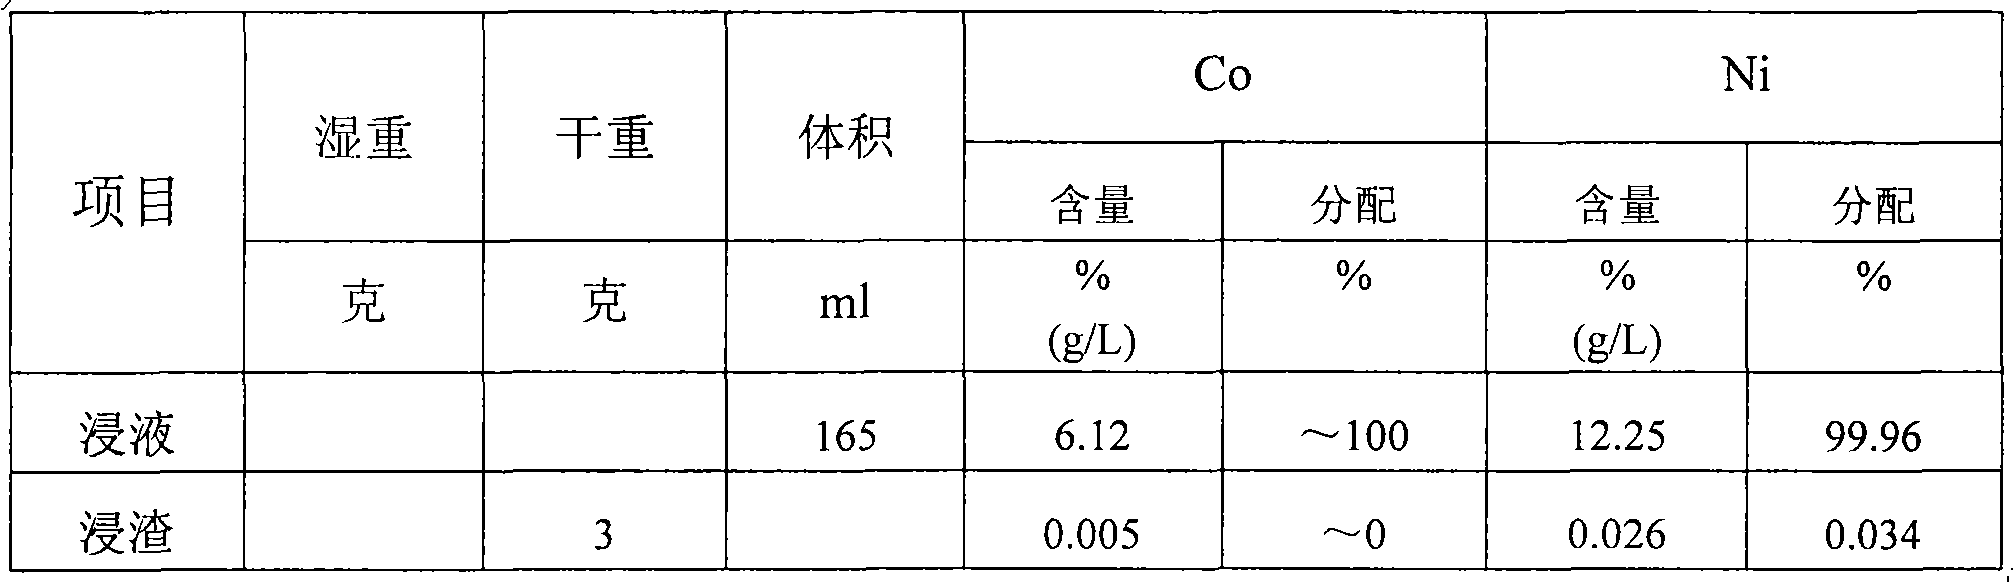 Method for reclaiming cobalt from manganese cobalt slag